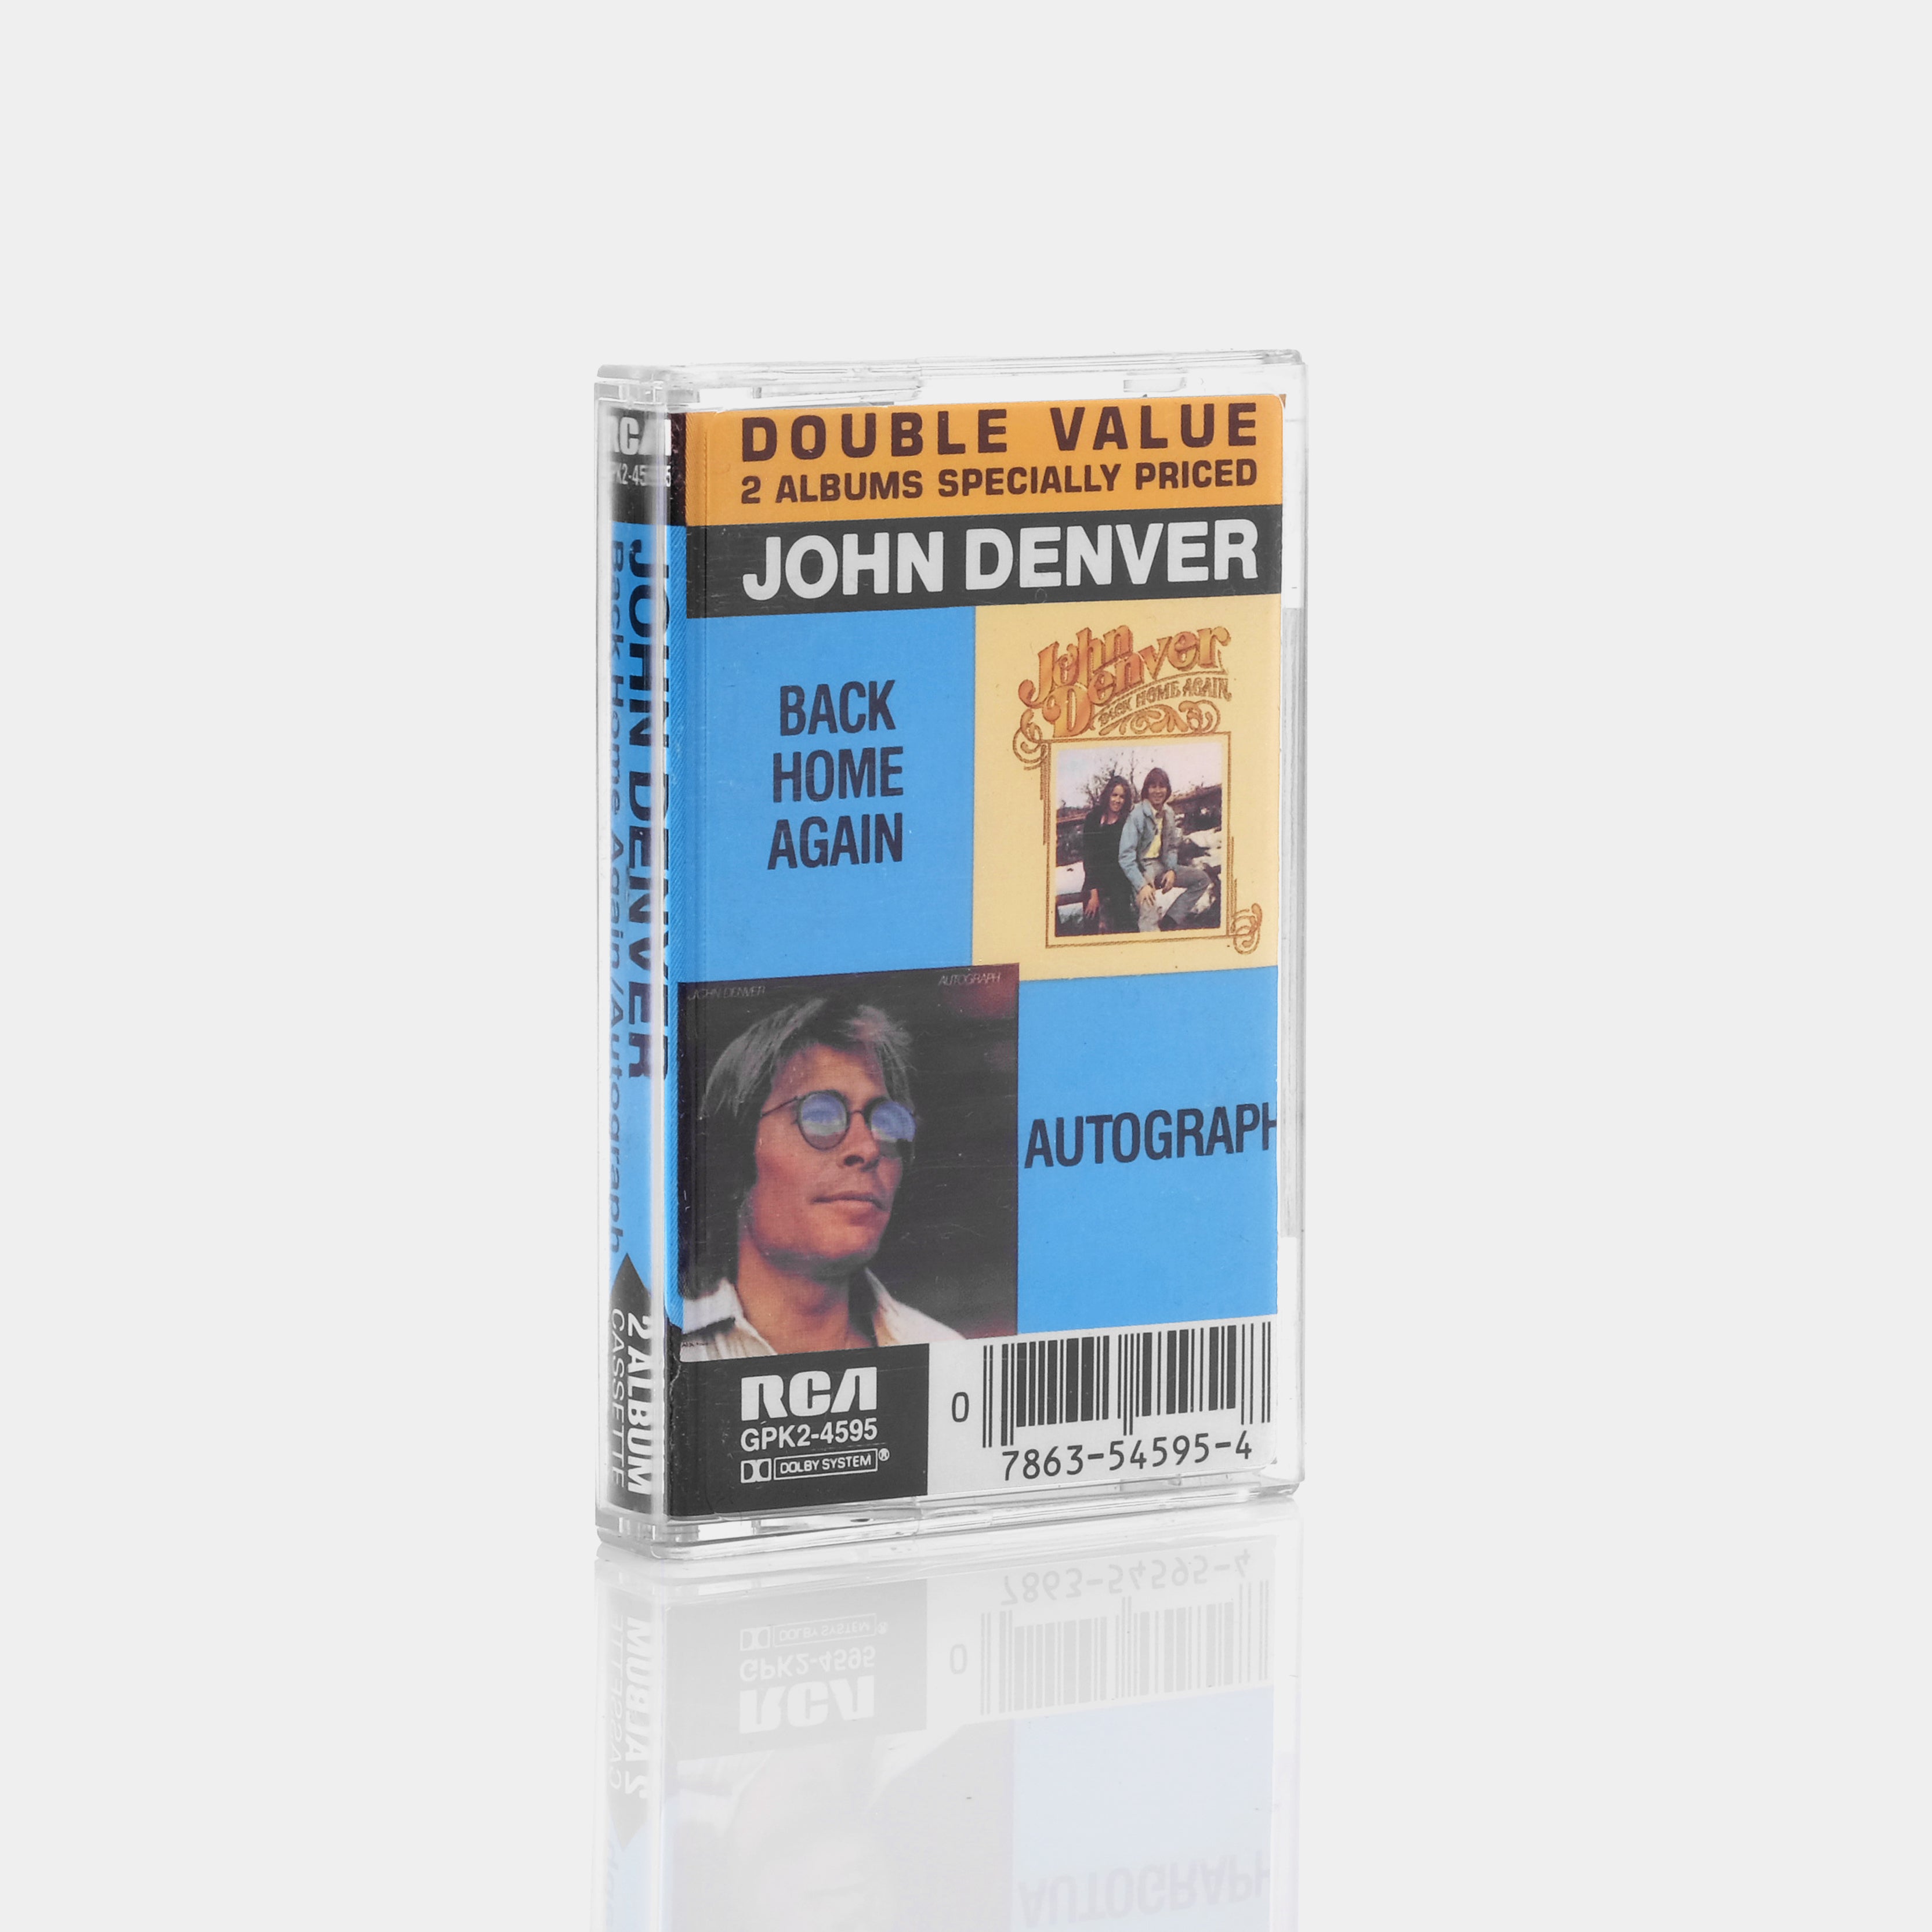 John Denver - Back Home Again/Autograph Cassette Tape